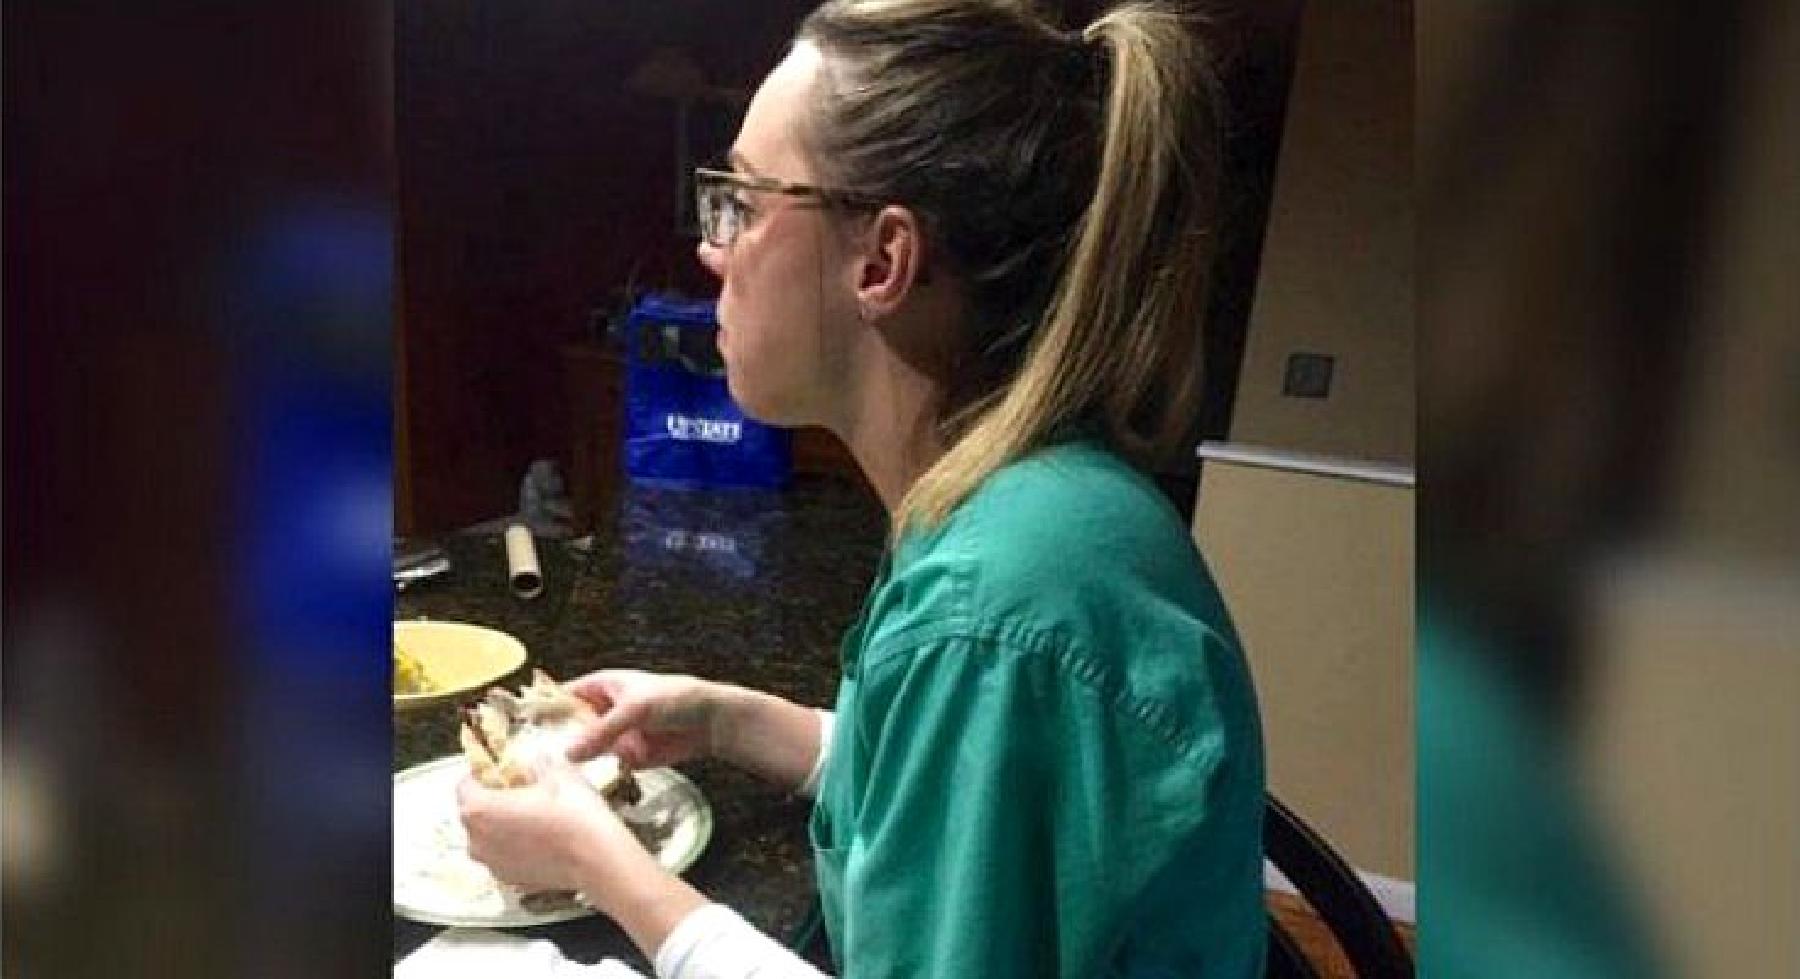 Došla je kući nakon 14 sati rada u bolnici, sjela pojesti sendvič, a onda je ugledala suprugov status na Facebooku